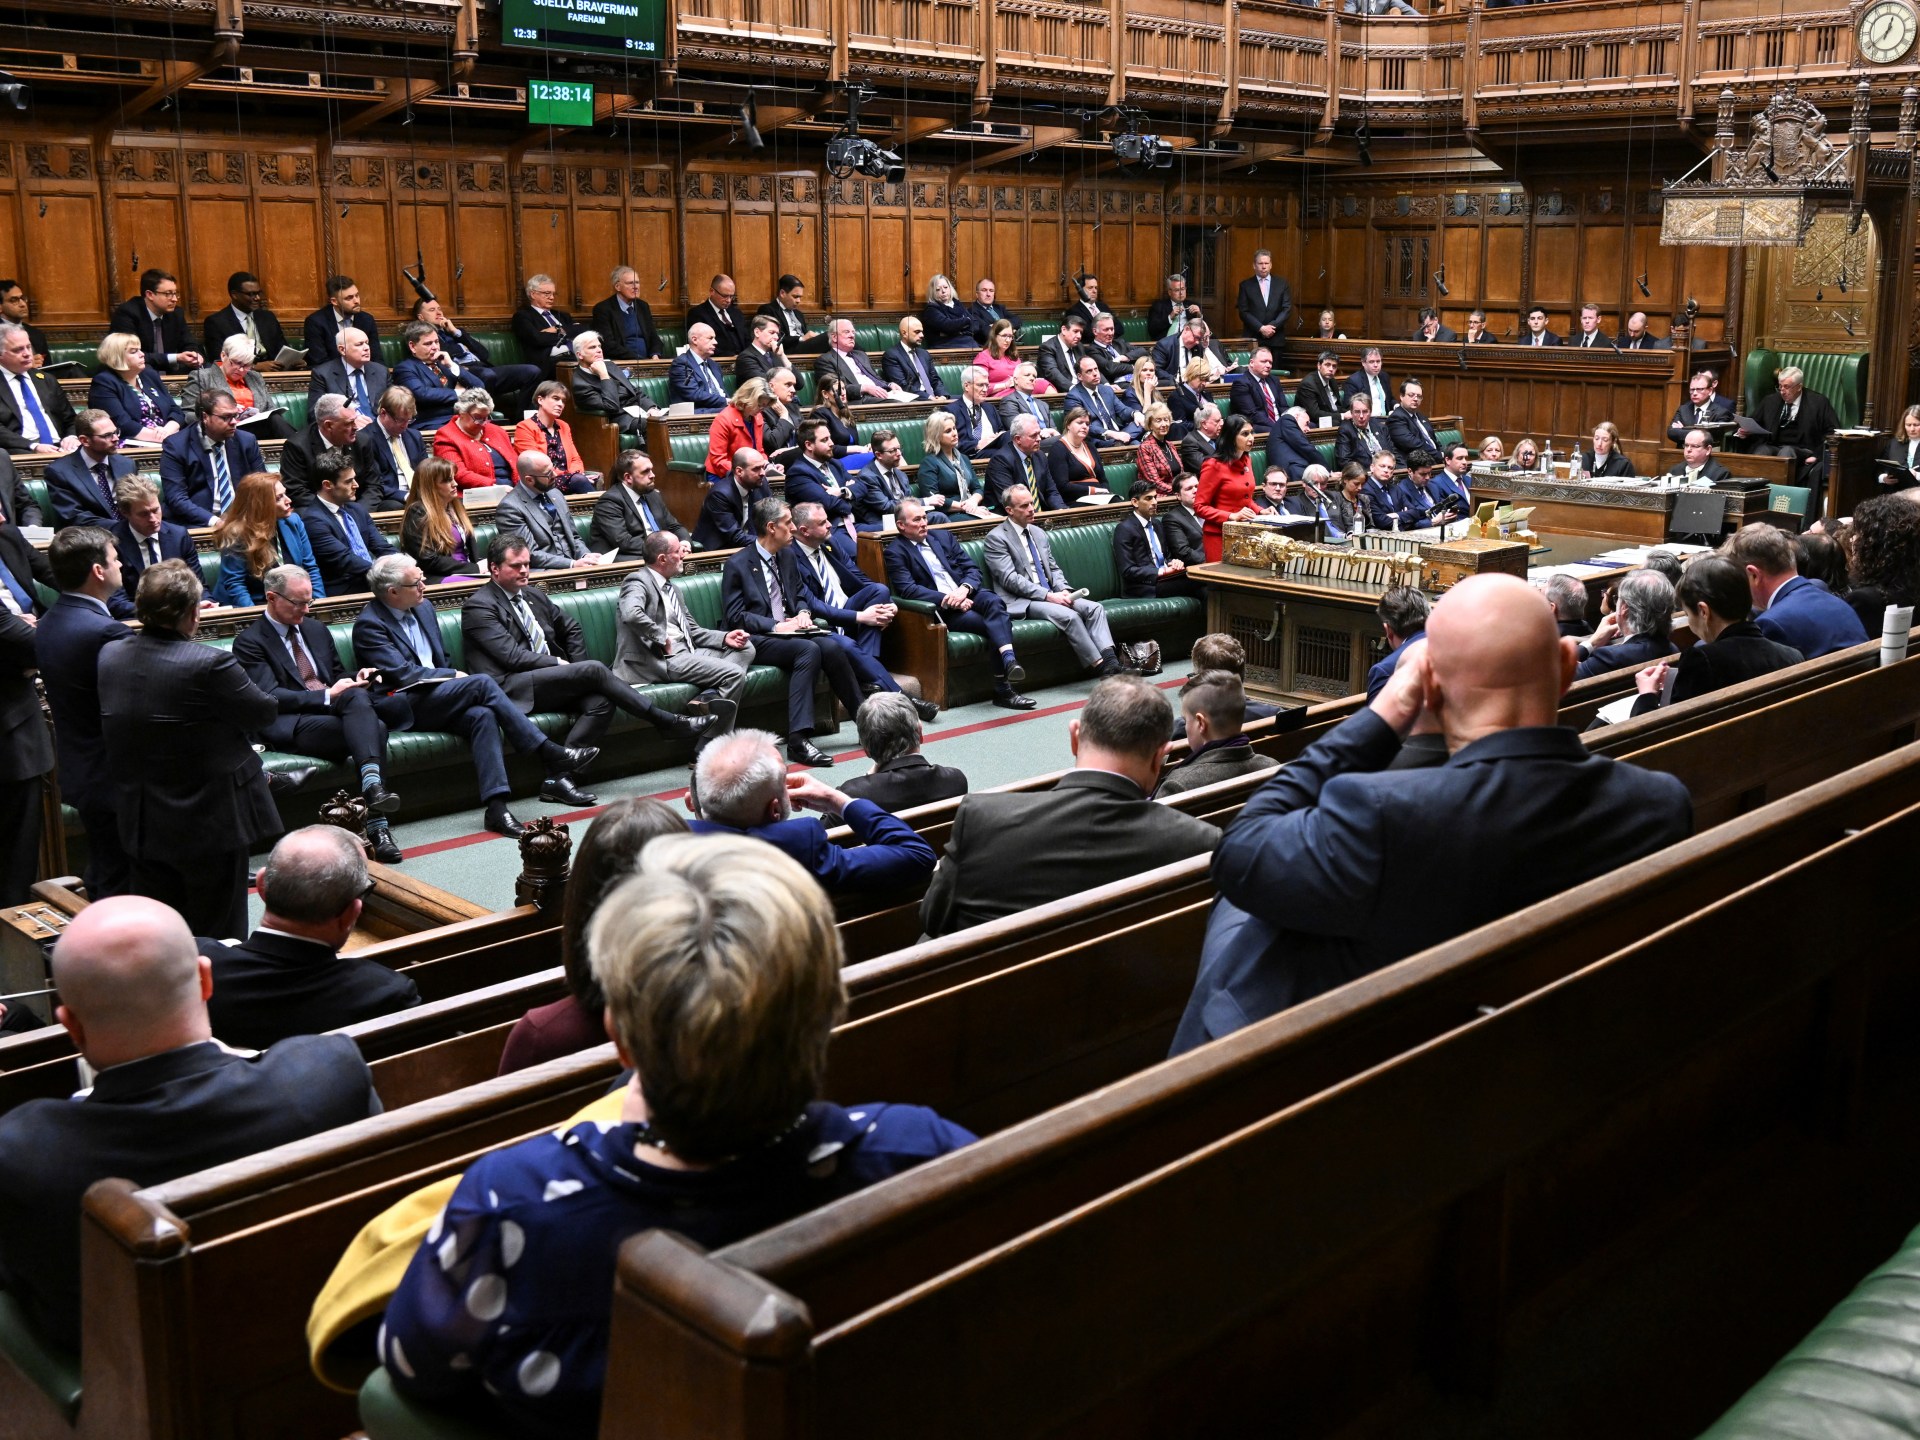 فضائح متتالية في البرلمان البريطاني تهز ثقة الناخبين